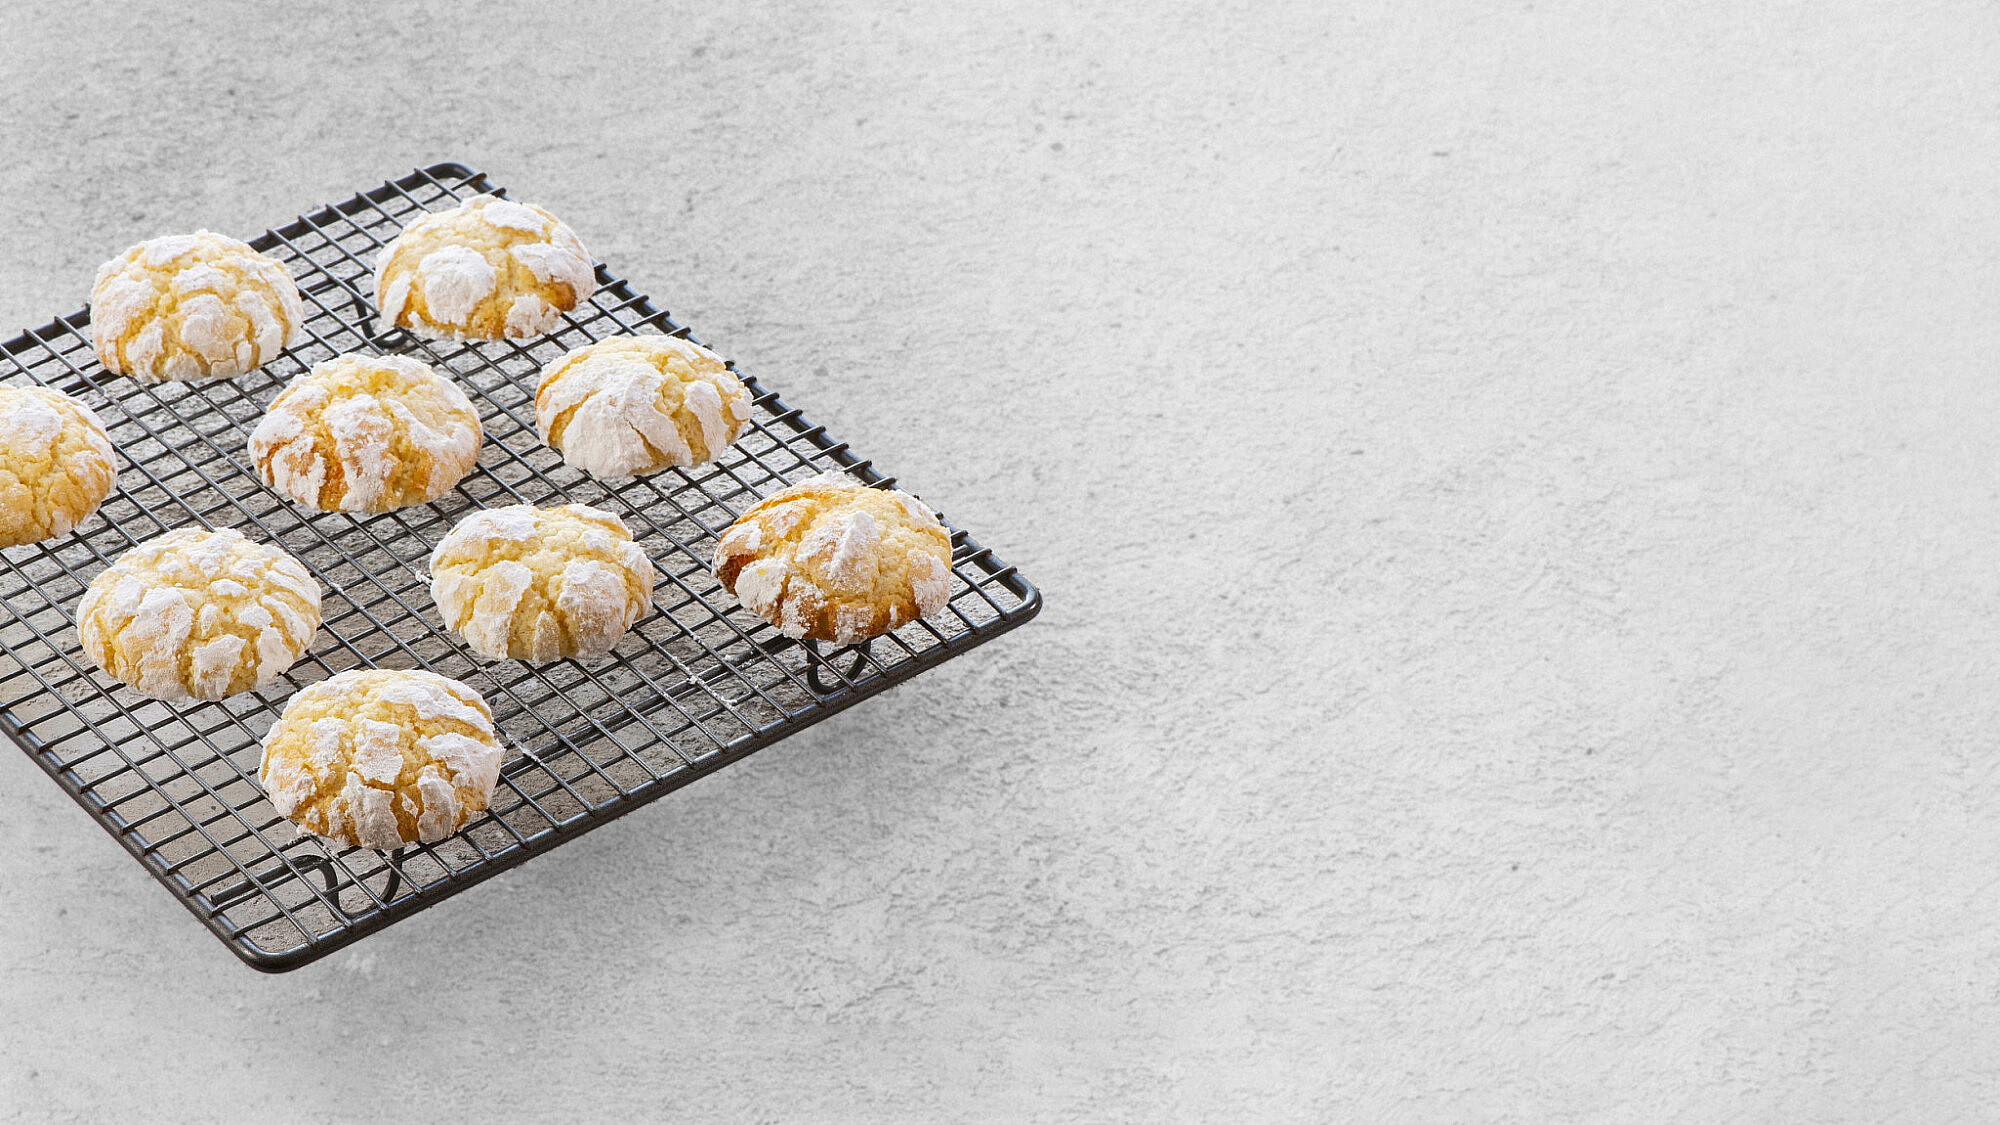 עוגיות לימון מושלגות של נטלי לוין | צילום: הדס ניצן, עריכה קולינרית: תמר שורצברד גולן